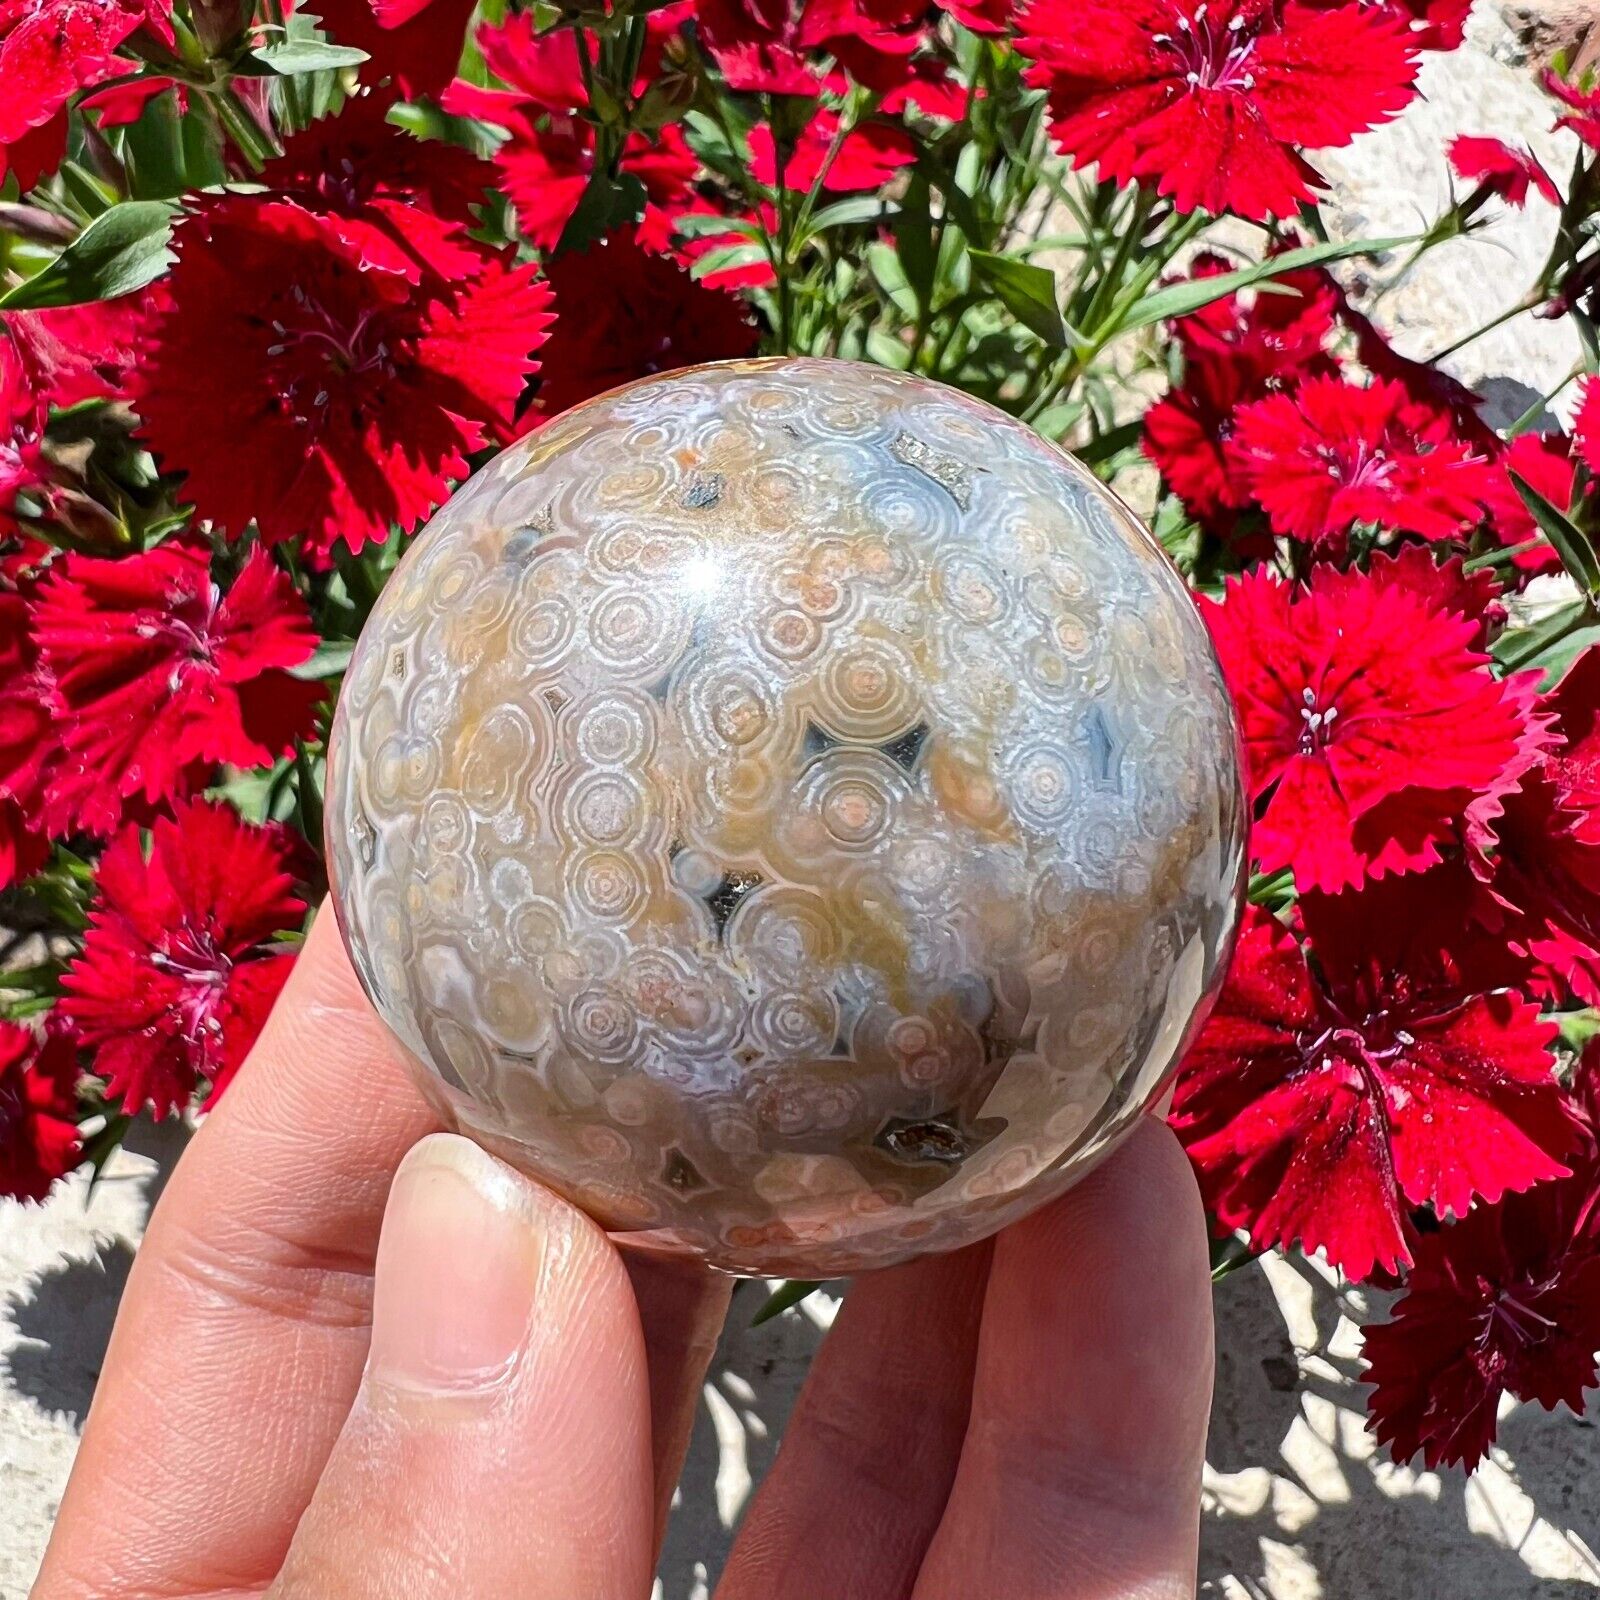 238g Rare Natural Ocean Jasper Sphere Quartz Crystal Ball Reiki Stone